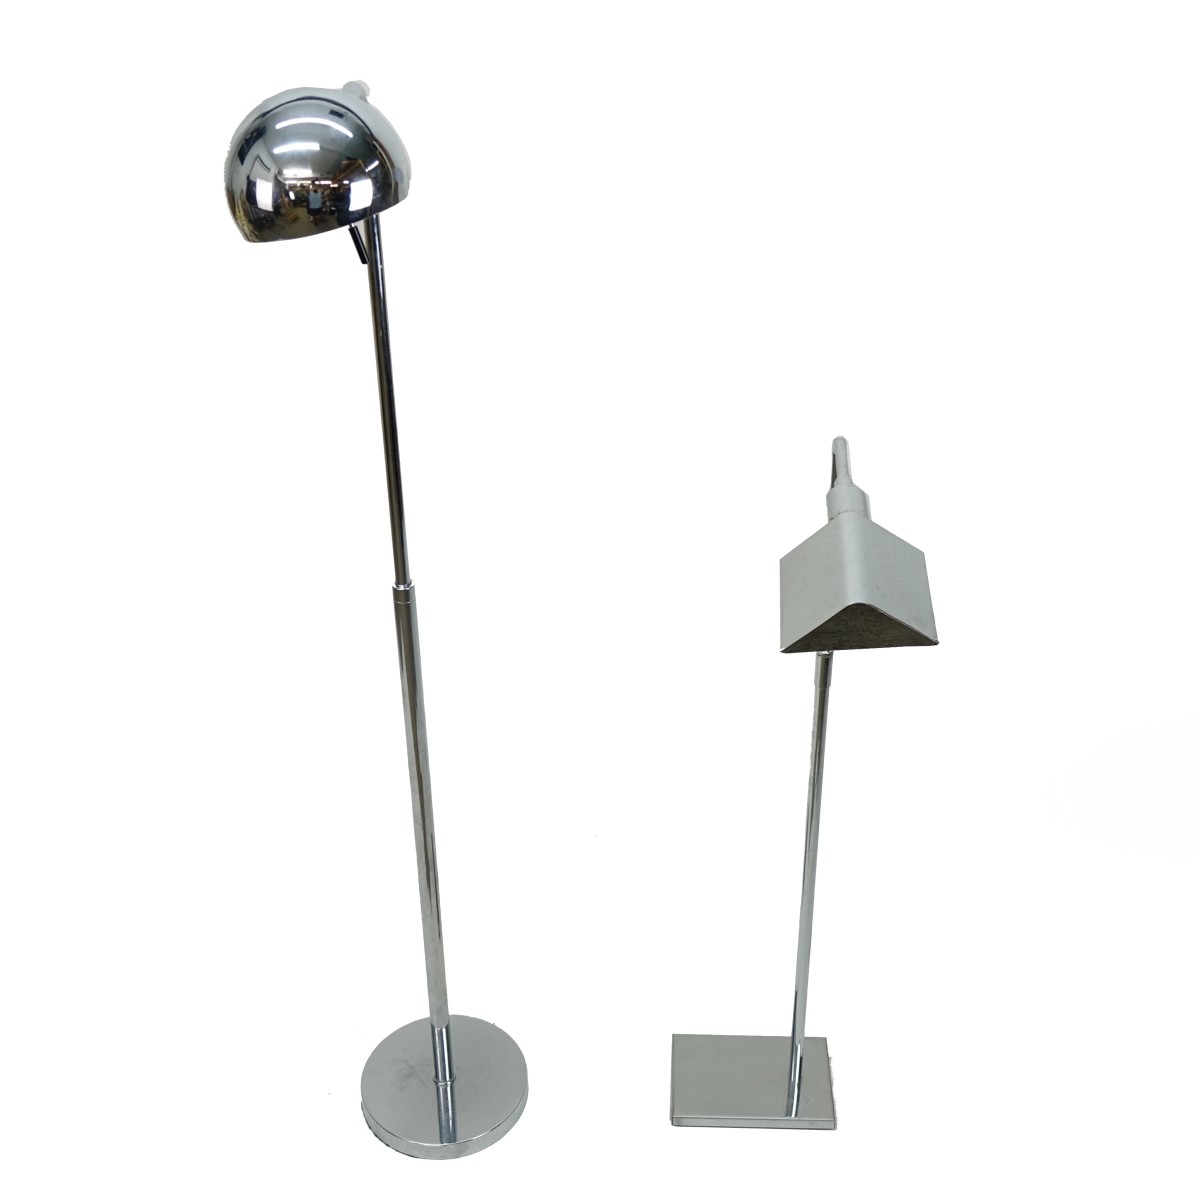 Two (2) Modern Chrome Floor Lamps